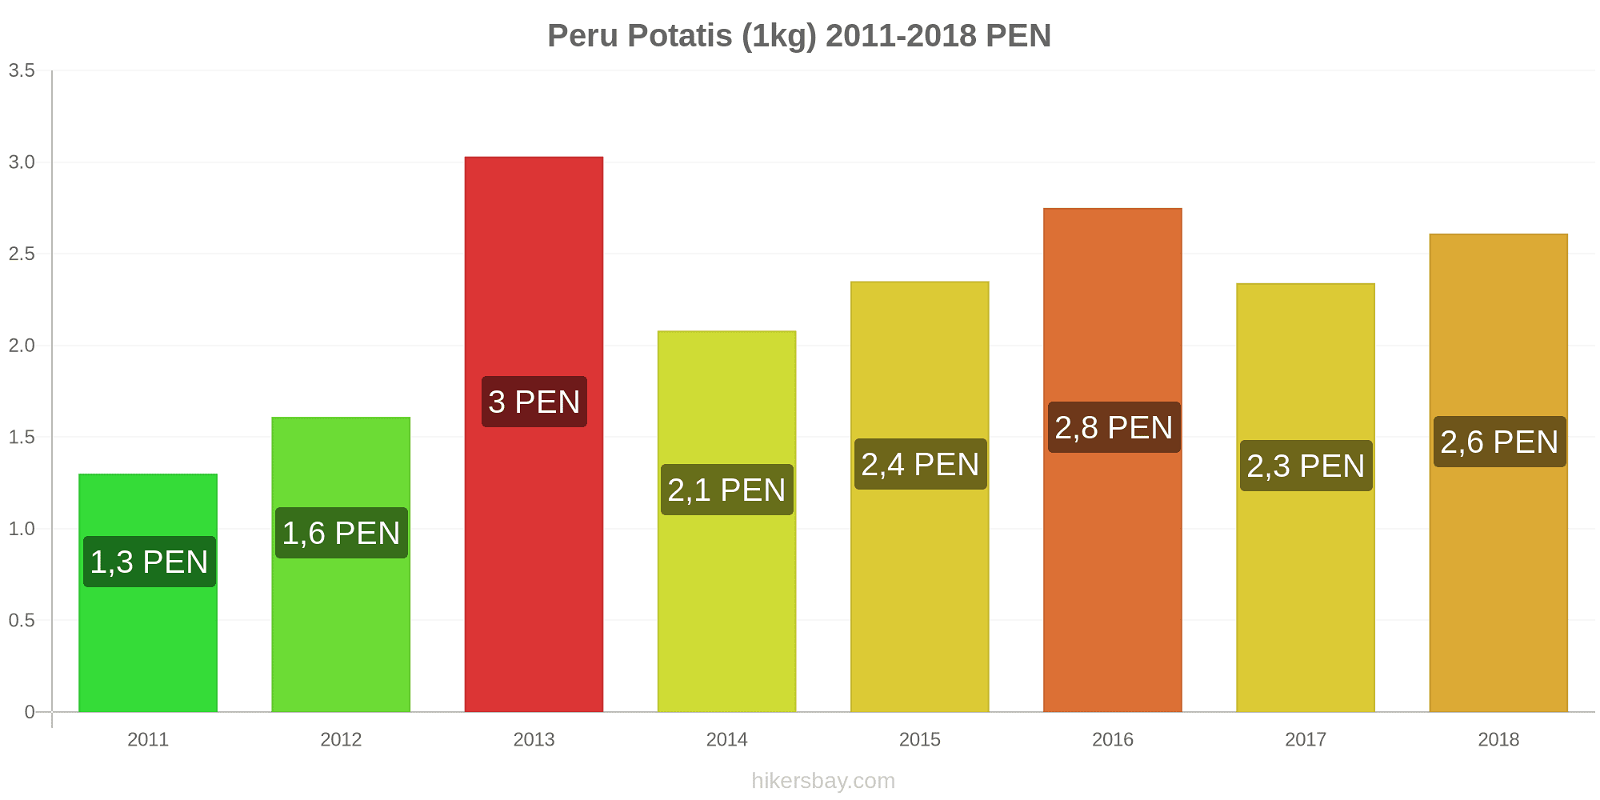 Peru prisändringar Potatis (1kg) hikersbay.com